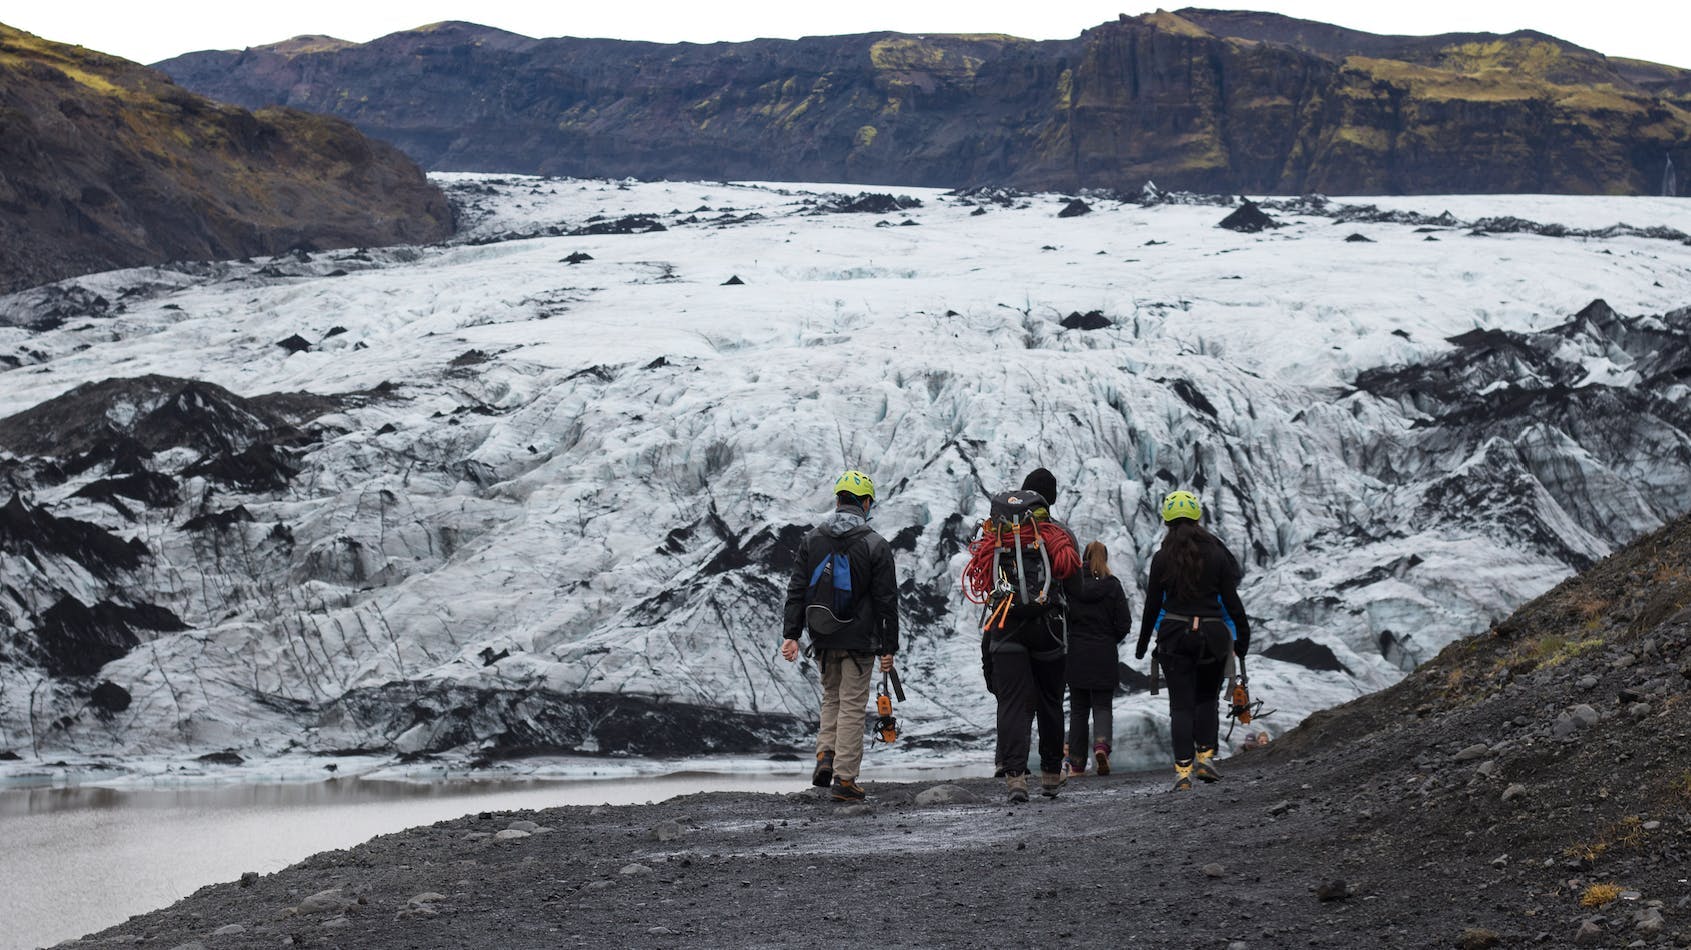 Il y a une courte randonnée de 10 à 15 minutes du parking jusqu'au bord du glacier Sólheimajökull.